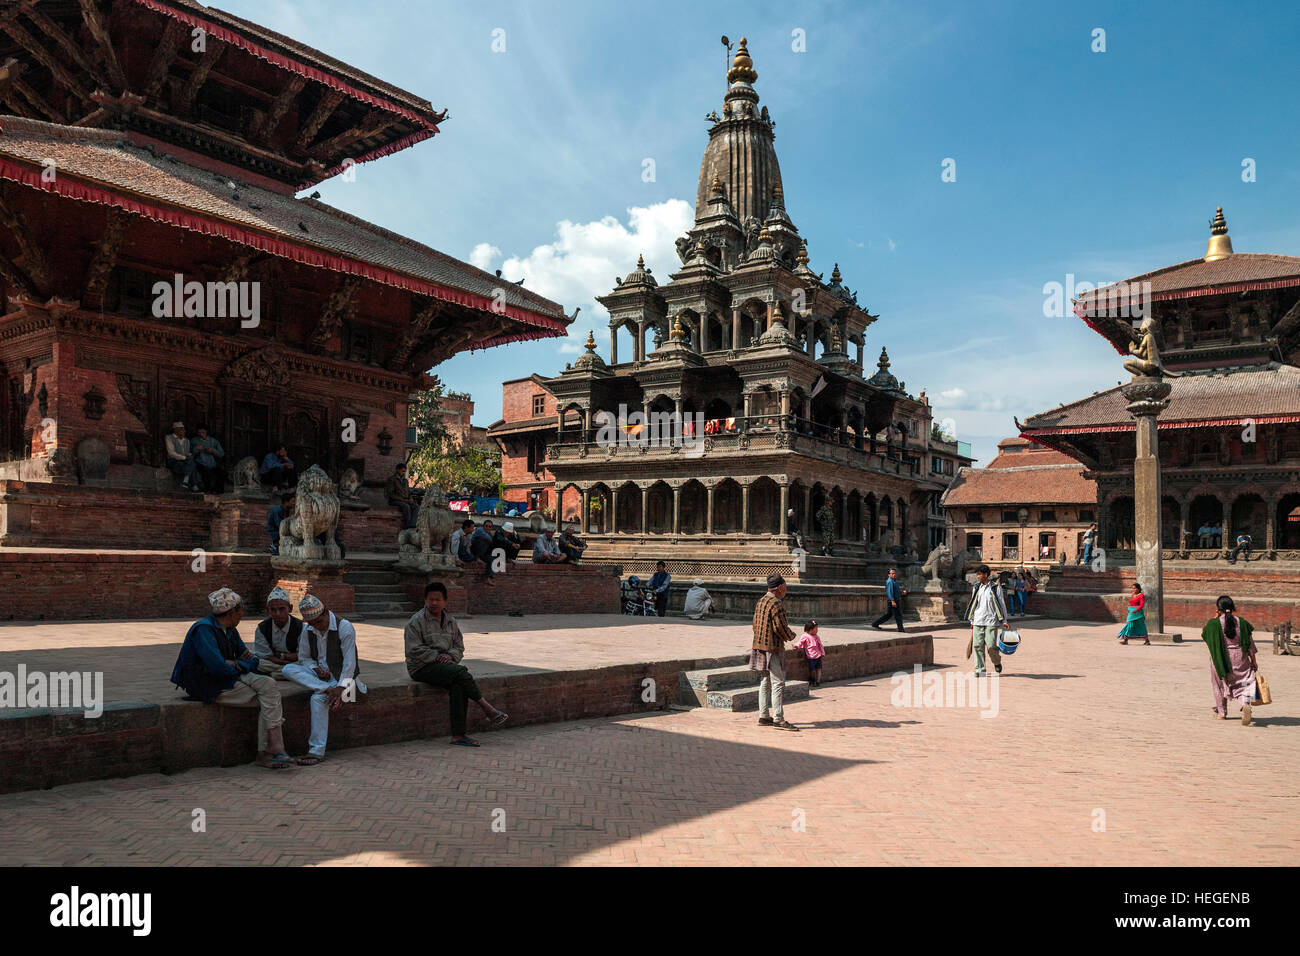 Bâtiments historiques de Patan Durbar Square près de la ville de Katmandou au Népal. (Avant le tremblement de terre de 2015) Banque D'Images